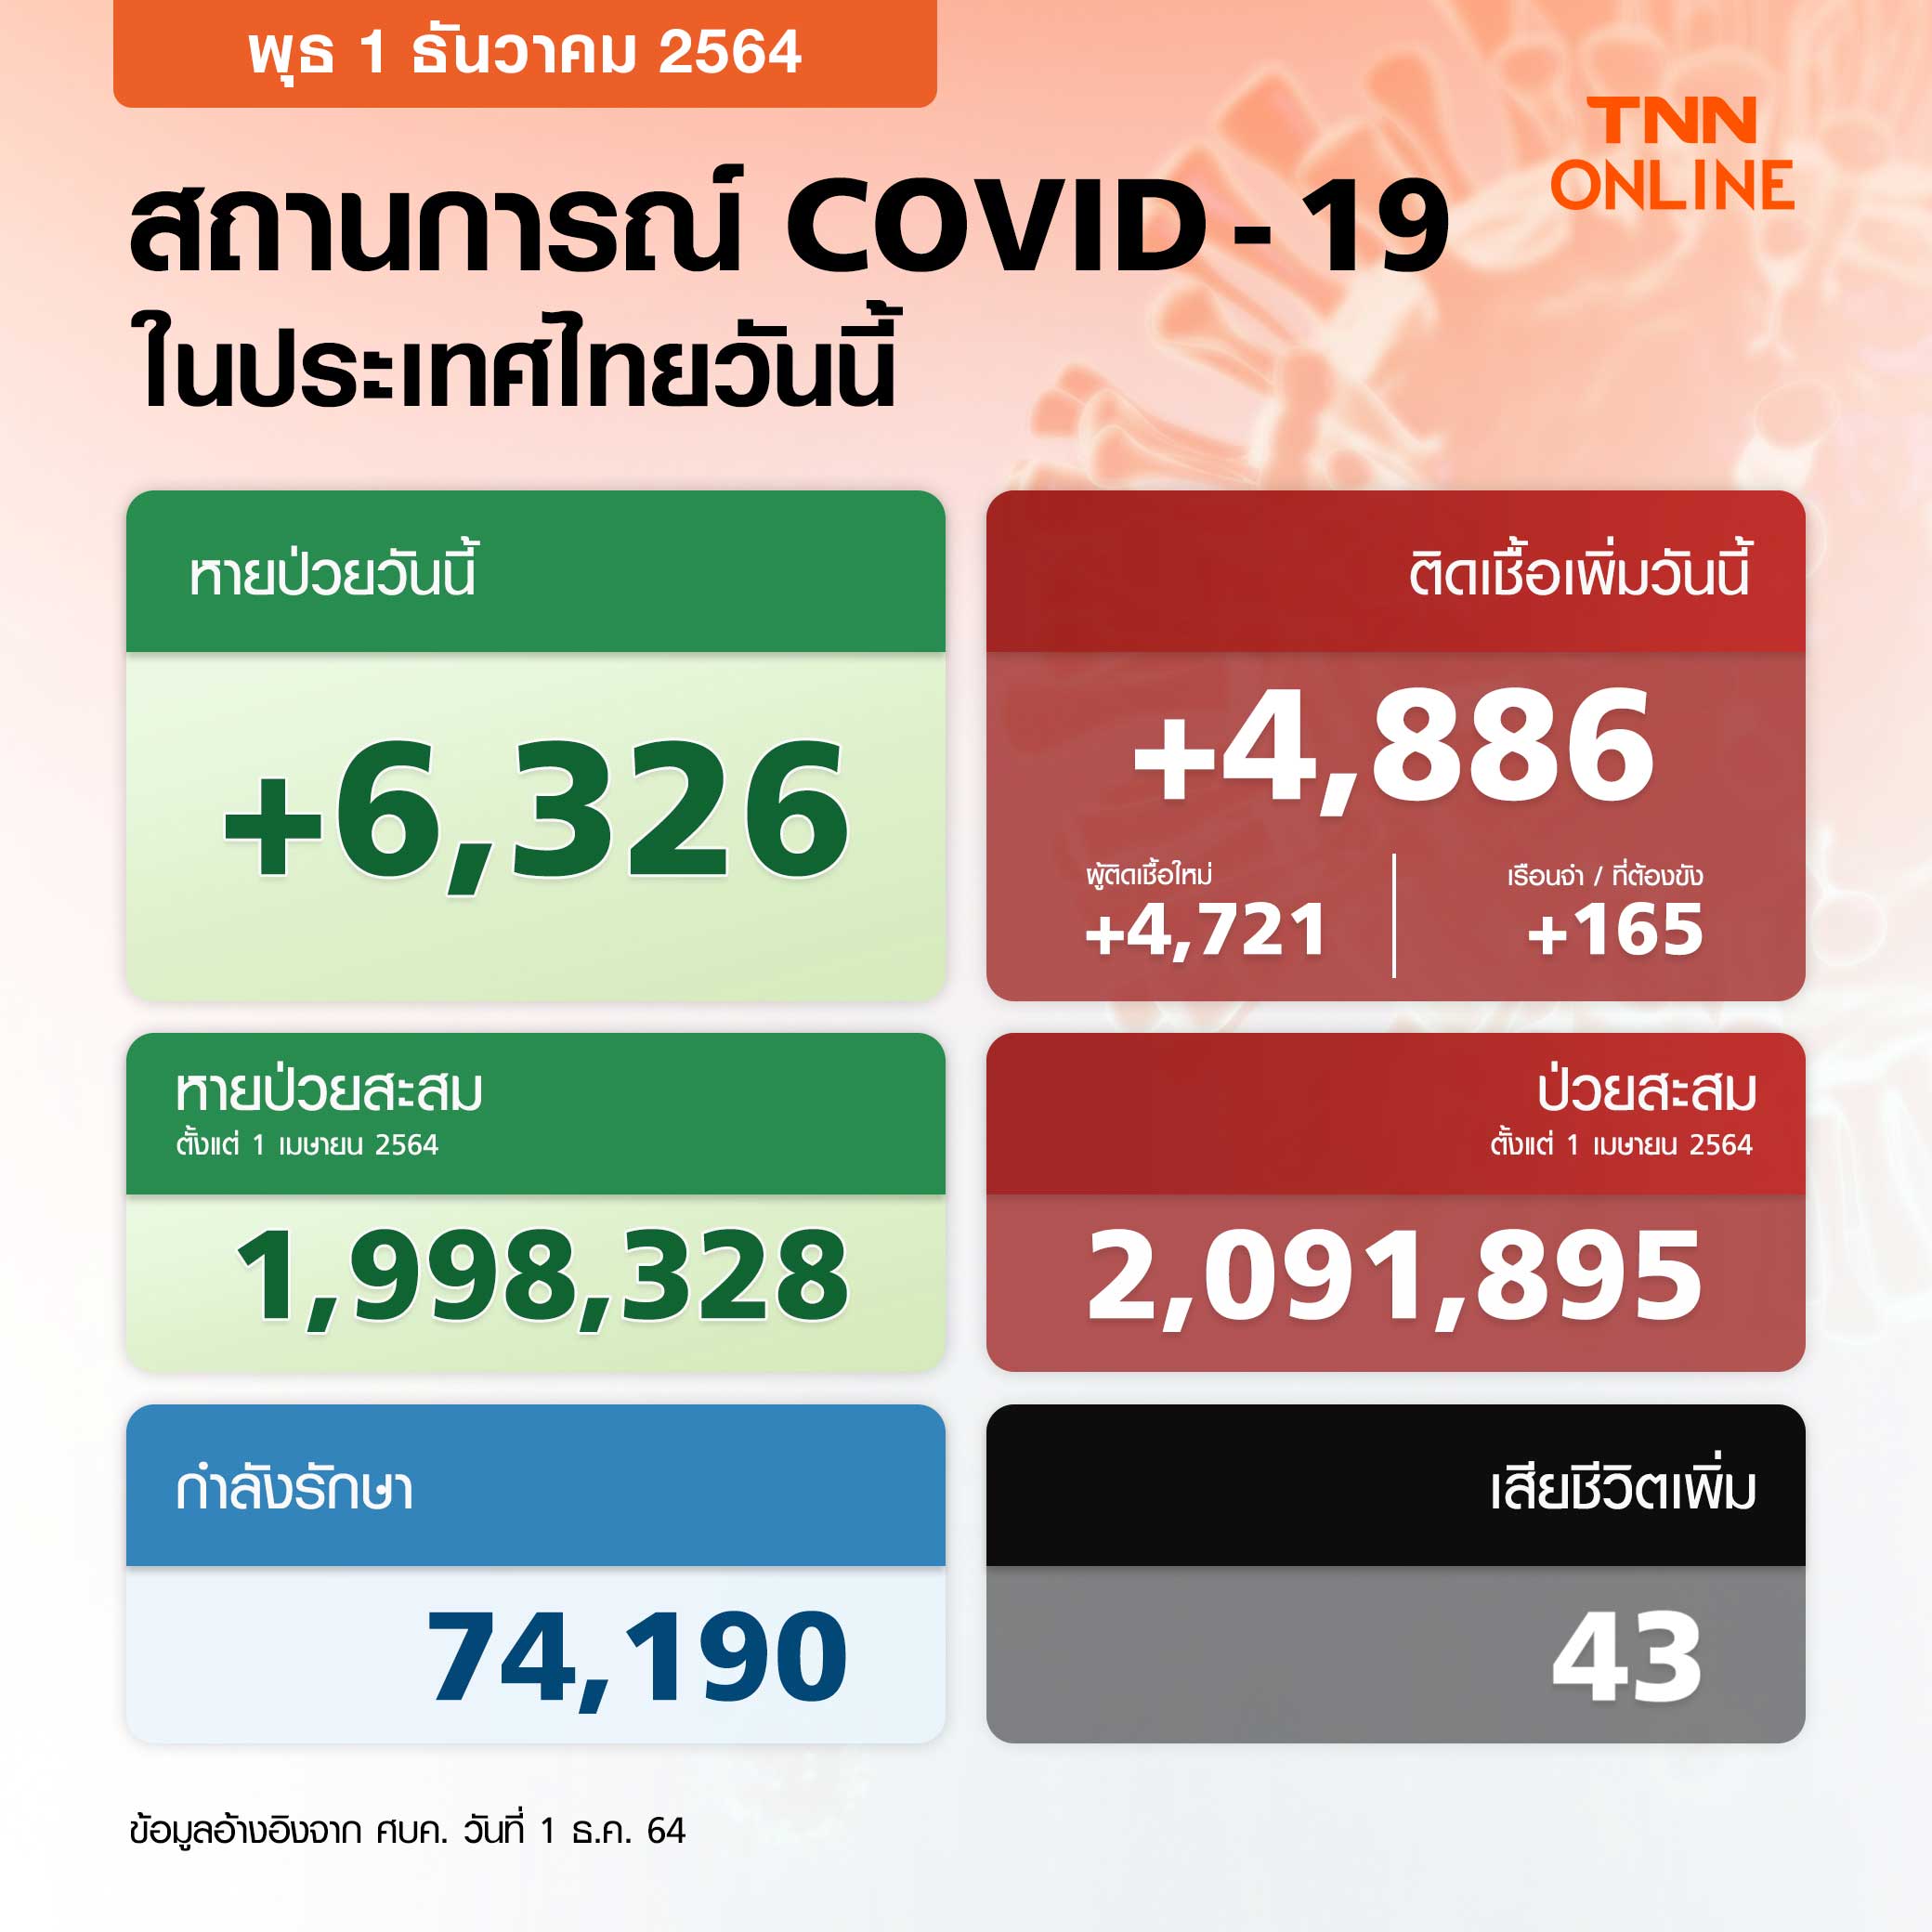 อัปเดตยอดโควิด-19 ล่าสุด วันนี้ไทยติดเชื้อเพิ่ม 4,886 ราย